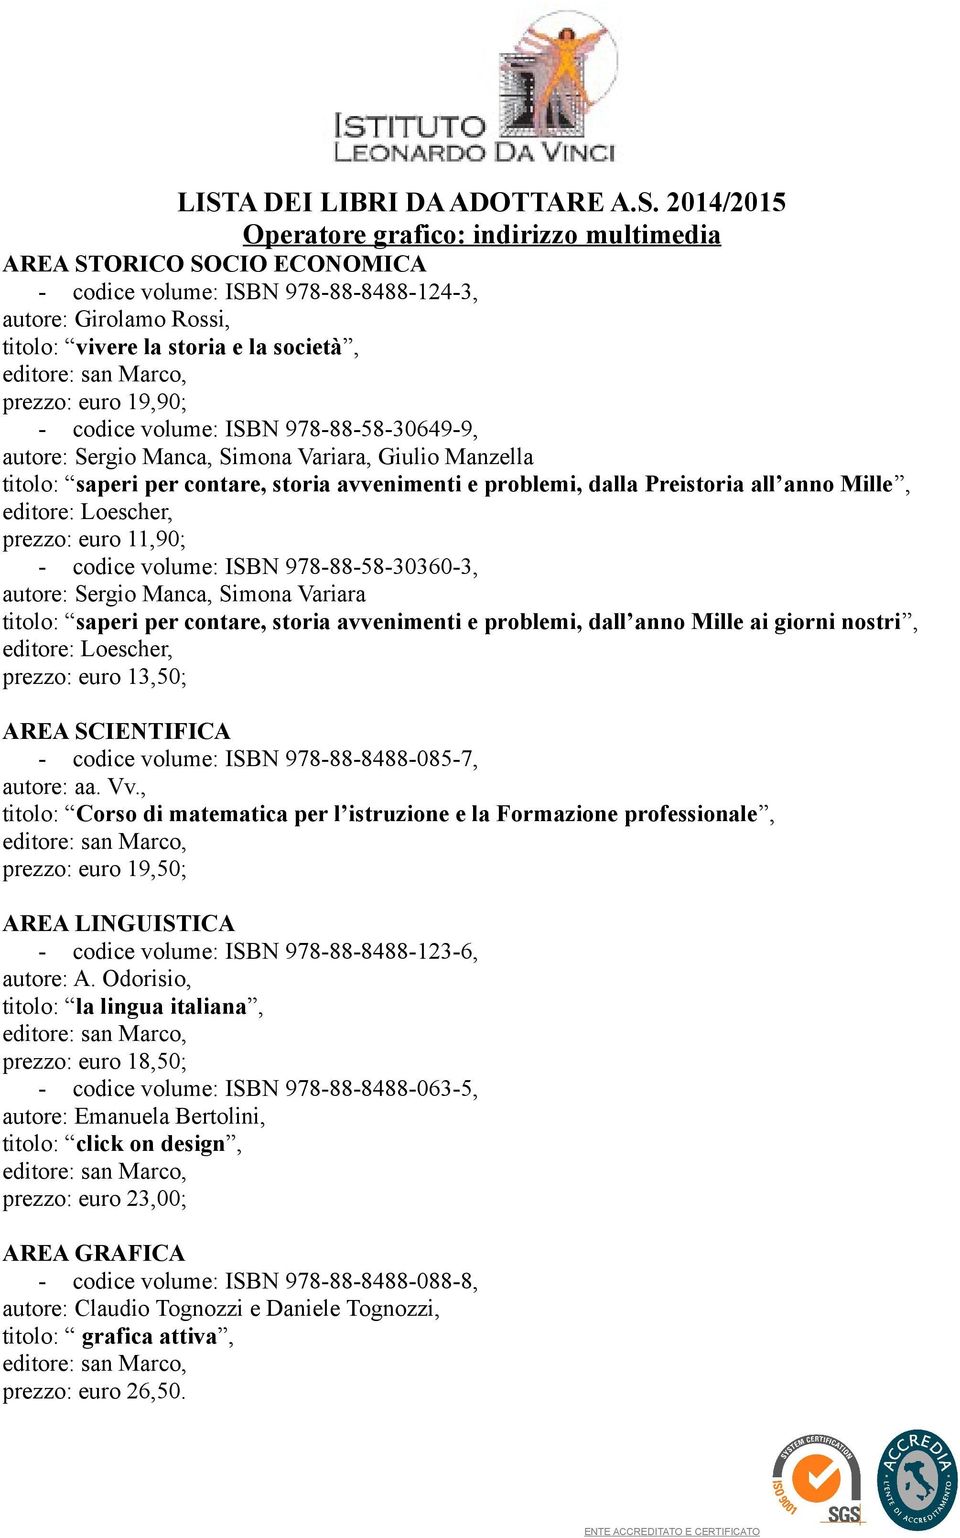 professionale, - codice volume: ISBN 978-88-8488-063-5, autore: Emanuela Bertolini, titolo: click on design, prezzo: euro 23,00;